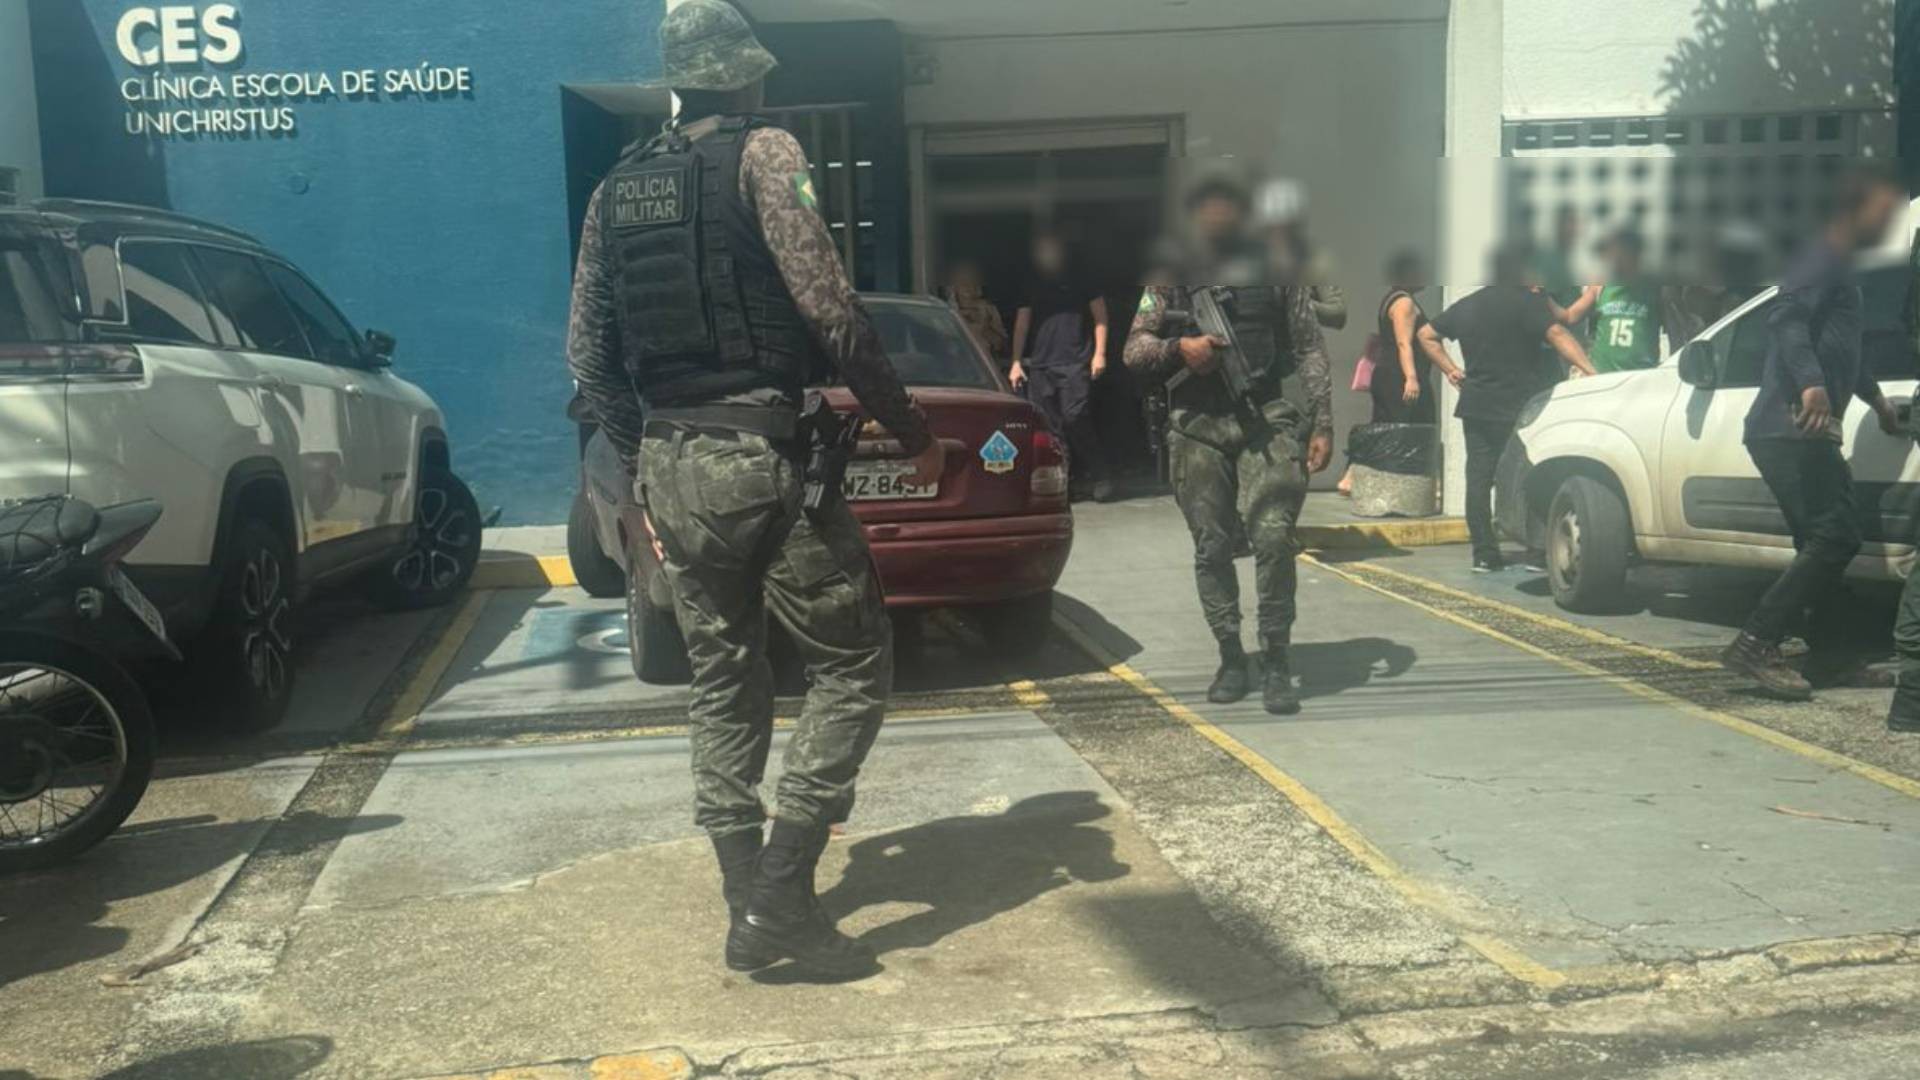 Dupla assalta pacientes de clínica escola em Fortaleza